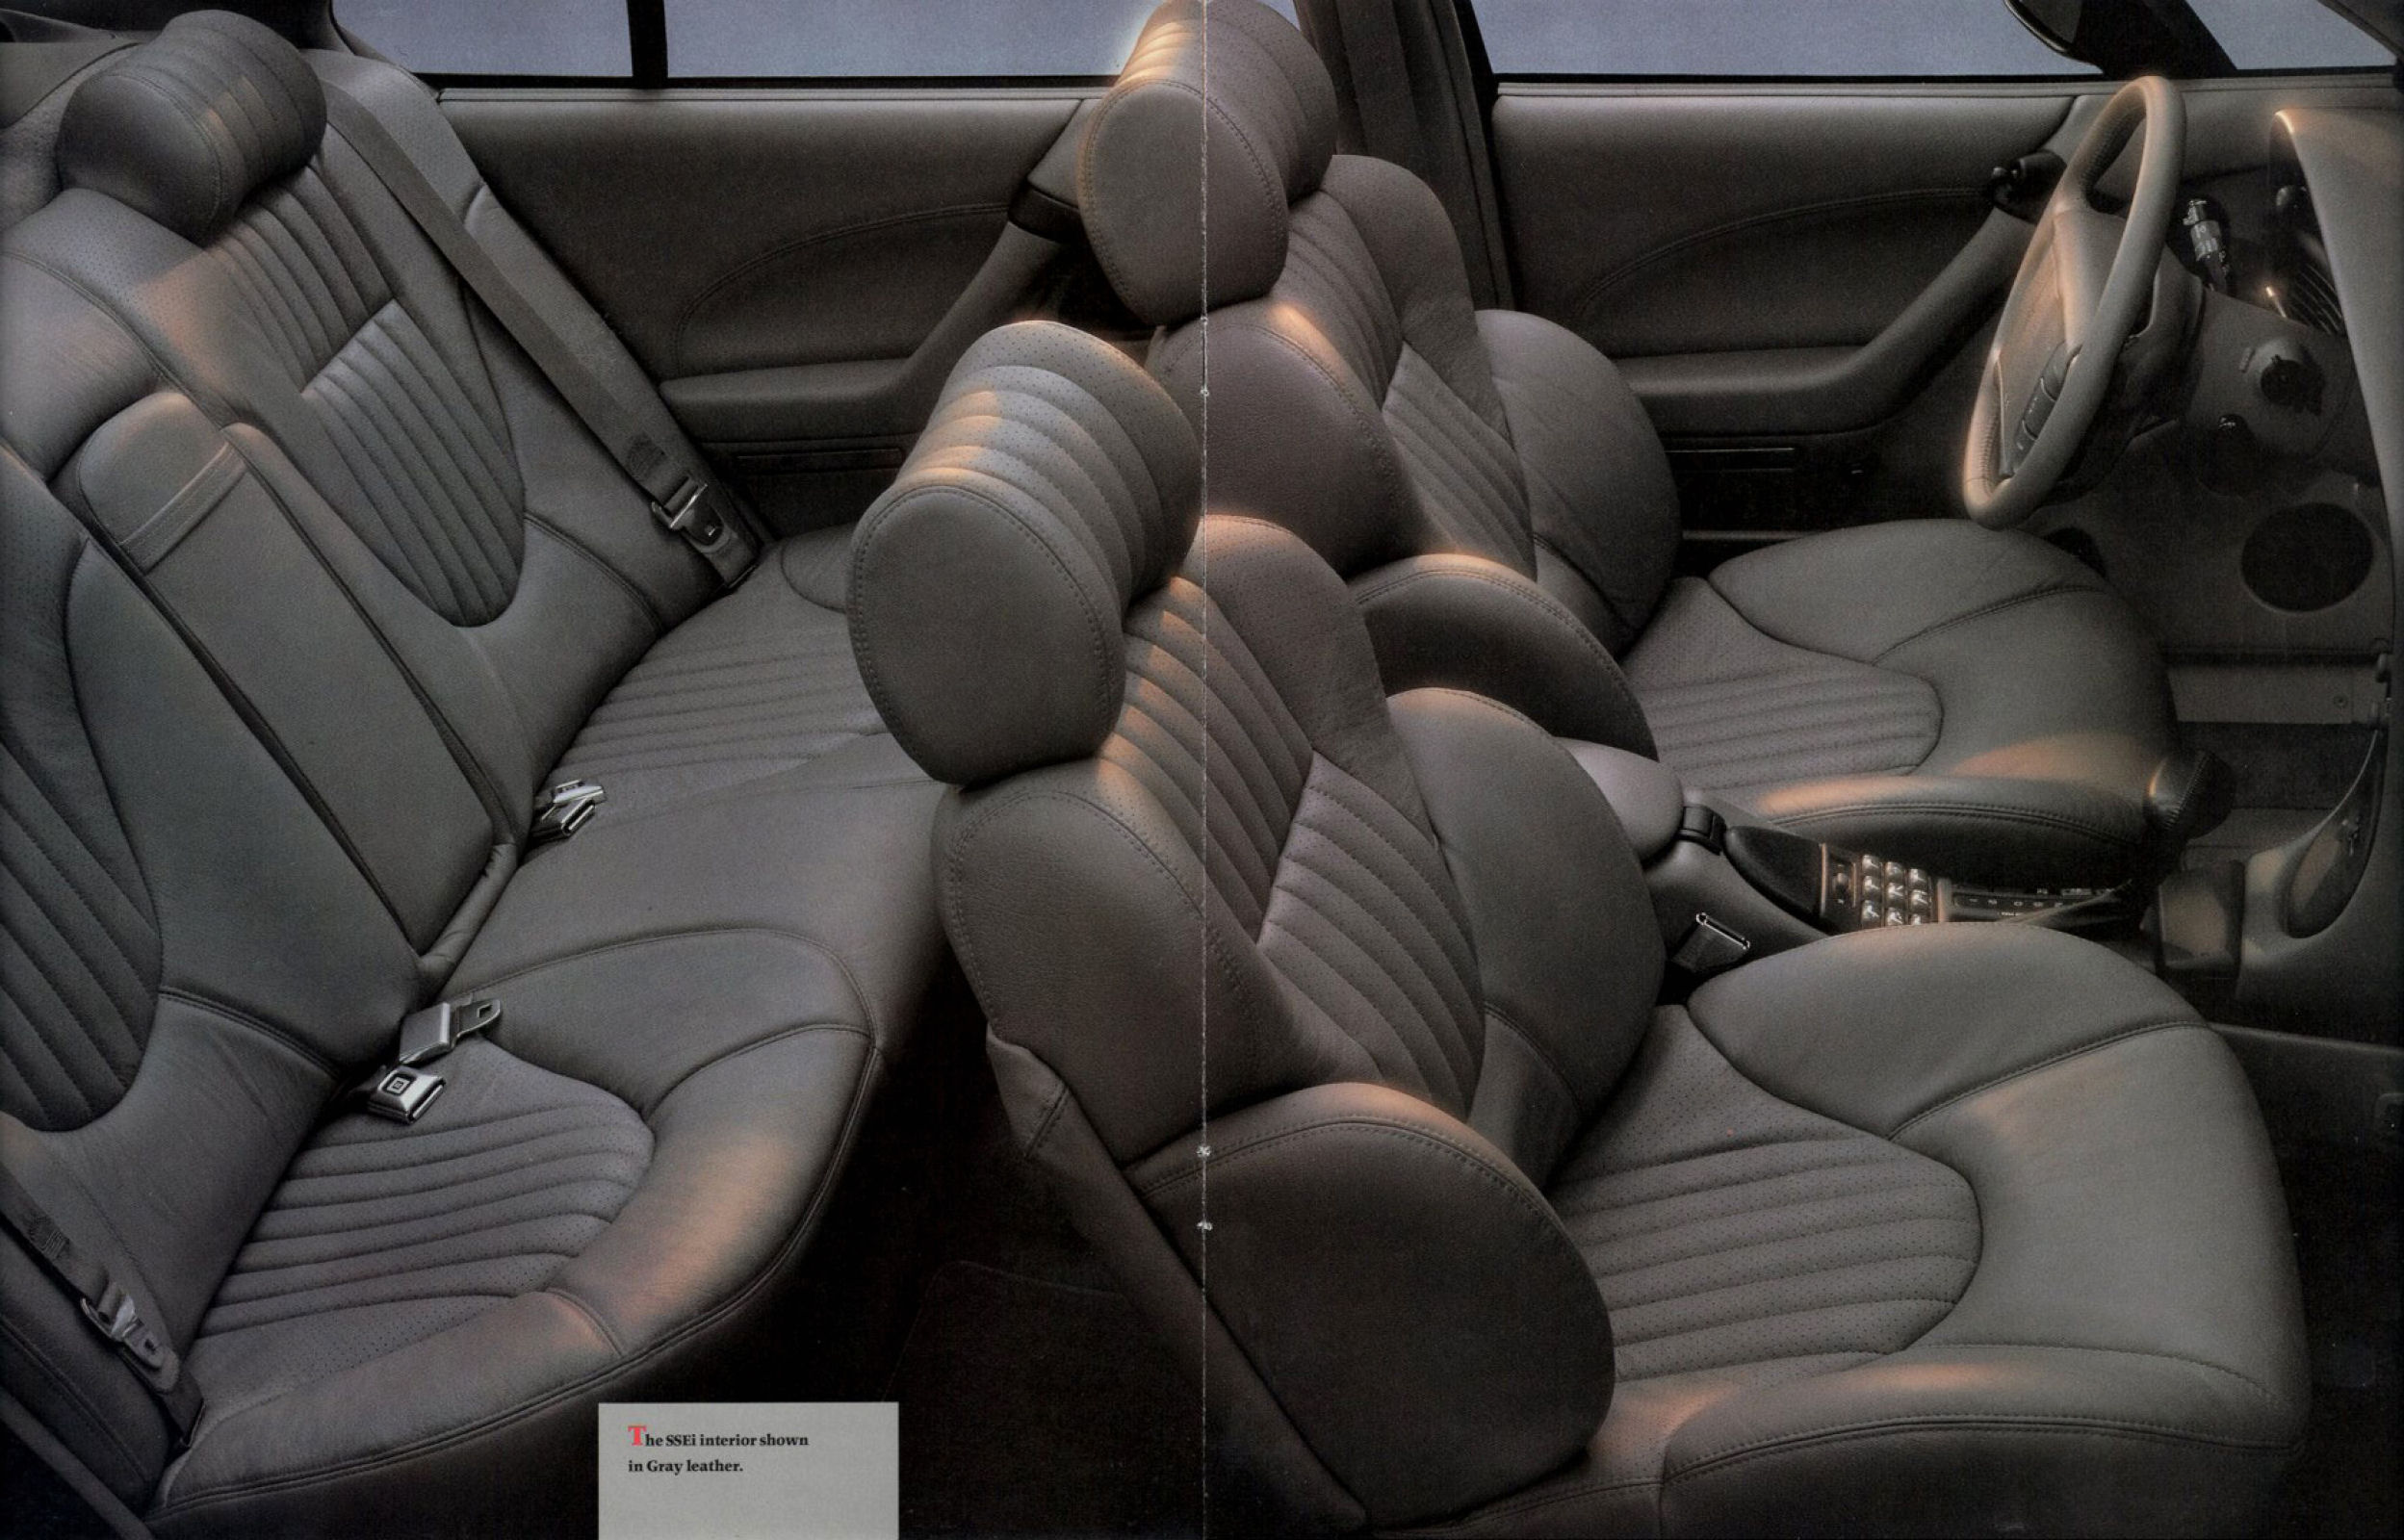 1993 Pontiac Bonneville-08-09